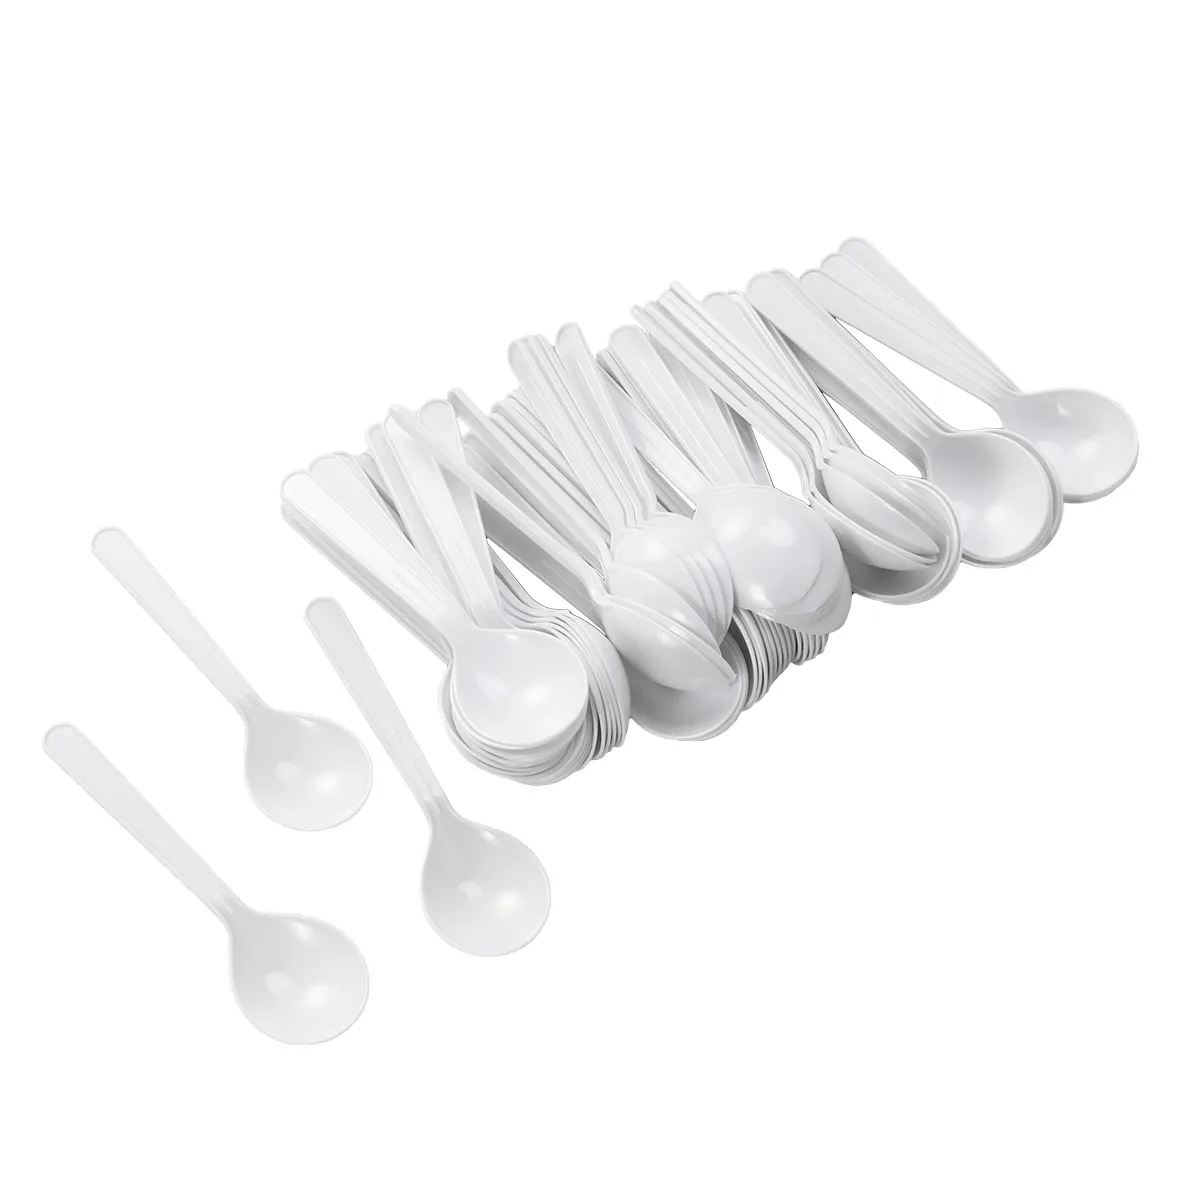 ROSENICE 88 шт пластиковые ложки круглая голова дизайн ложка для супа одноразовые столовые приборы ложки для вечеринки кухонная посуда(белый